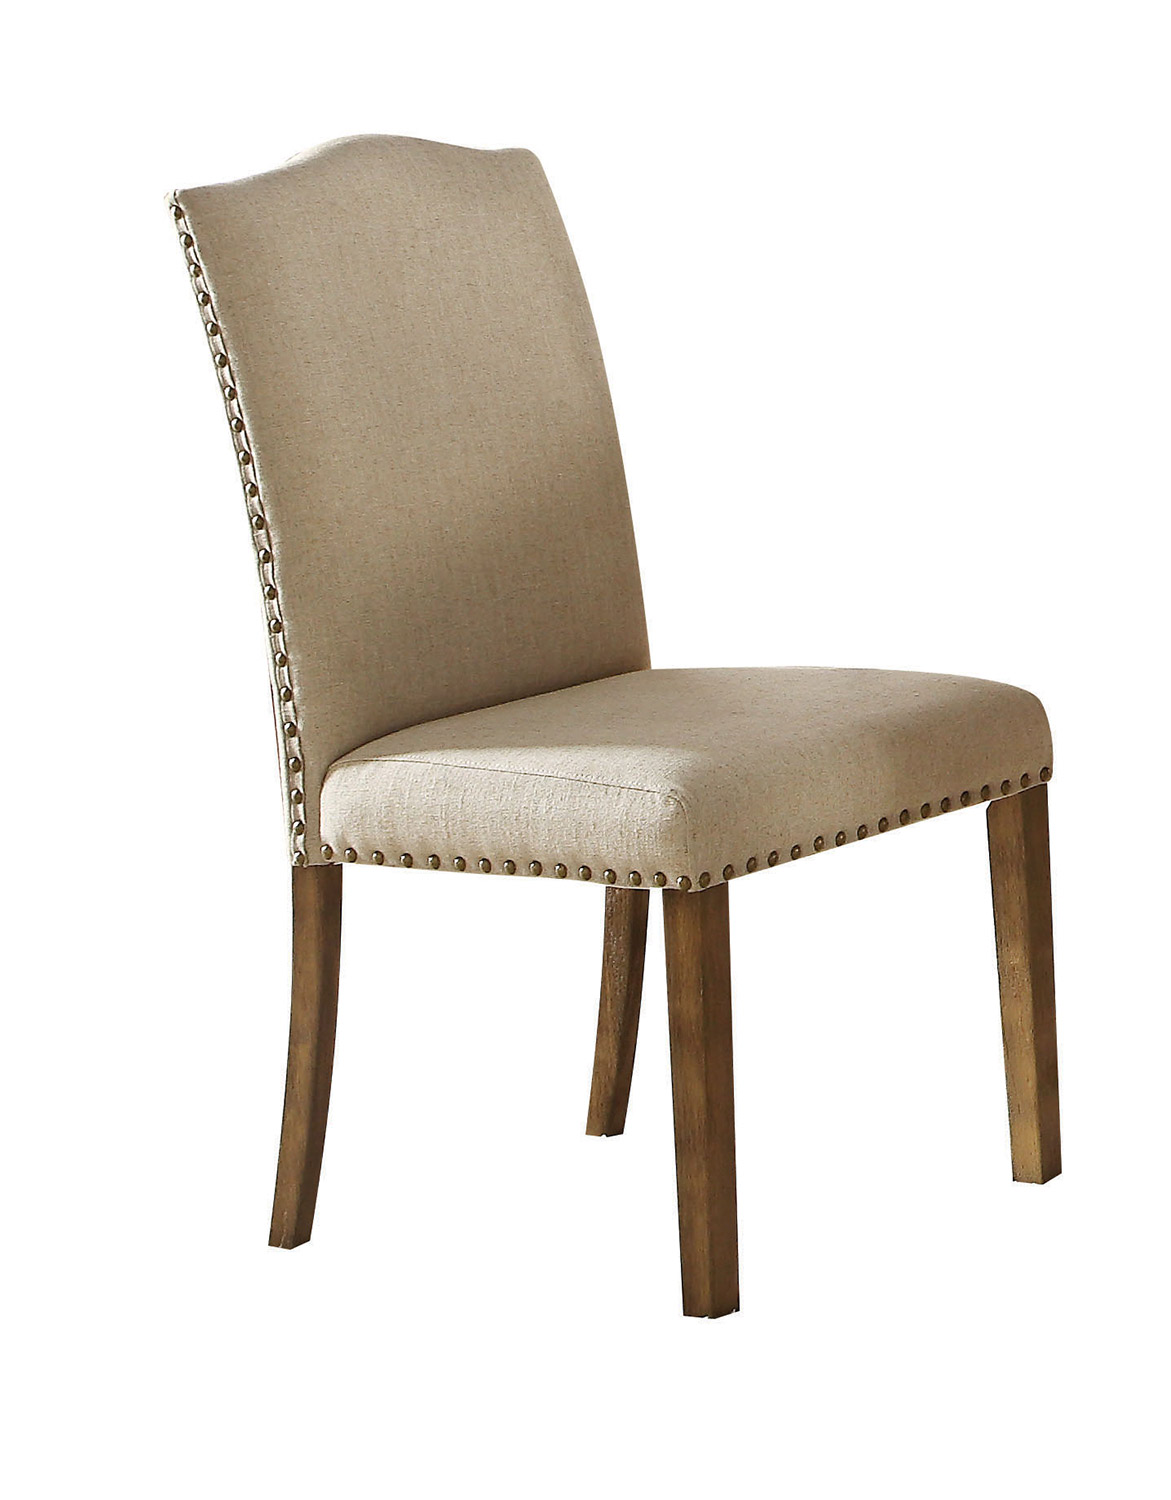 Acme Parker Side Chair - Khaki Linen/Salvage Oak